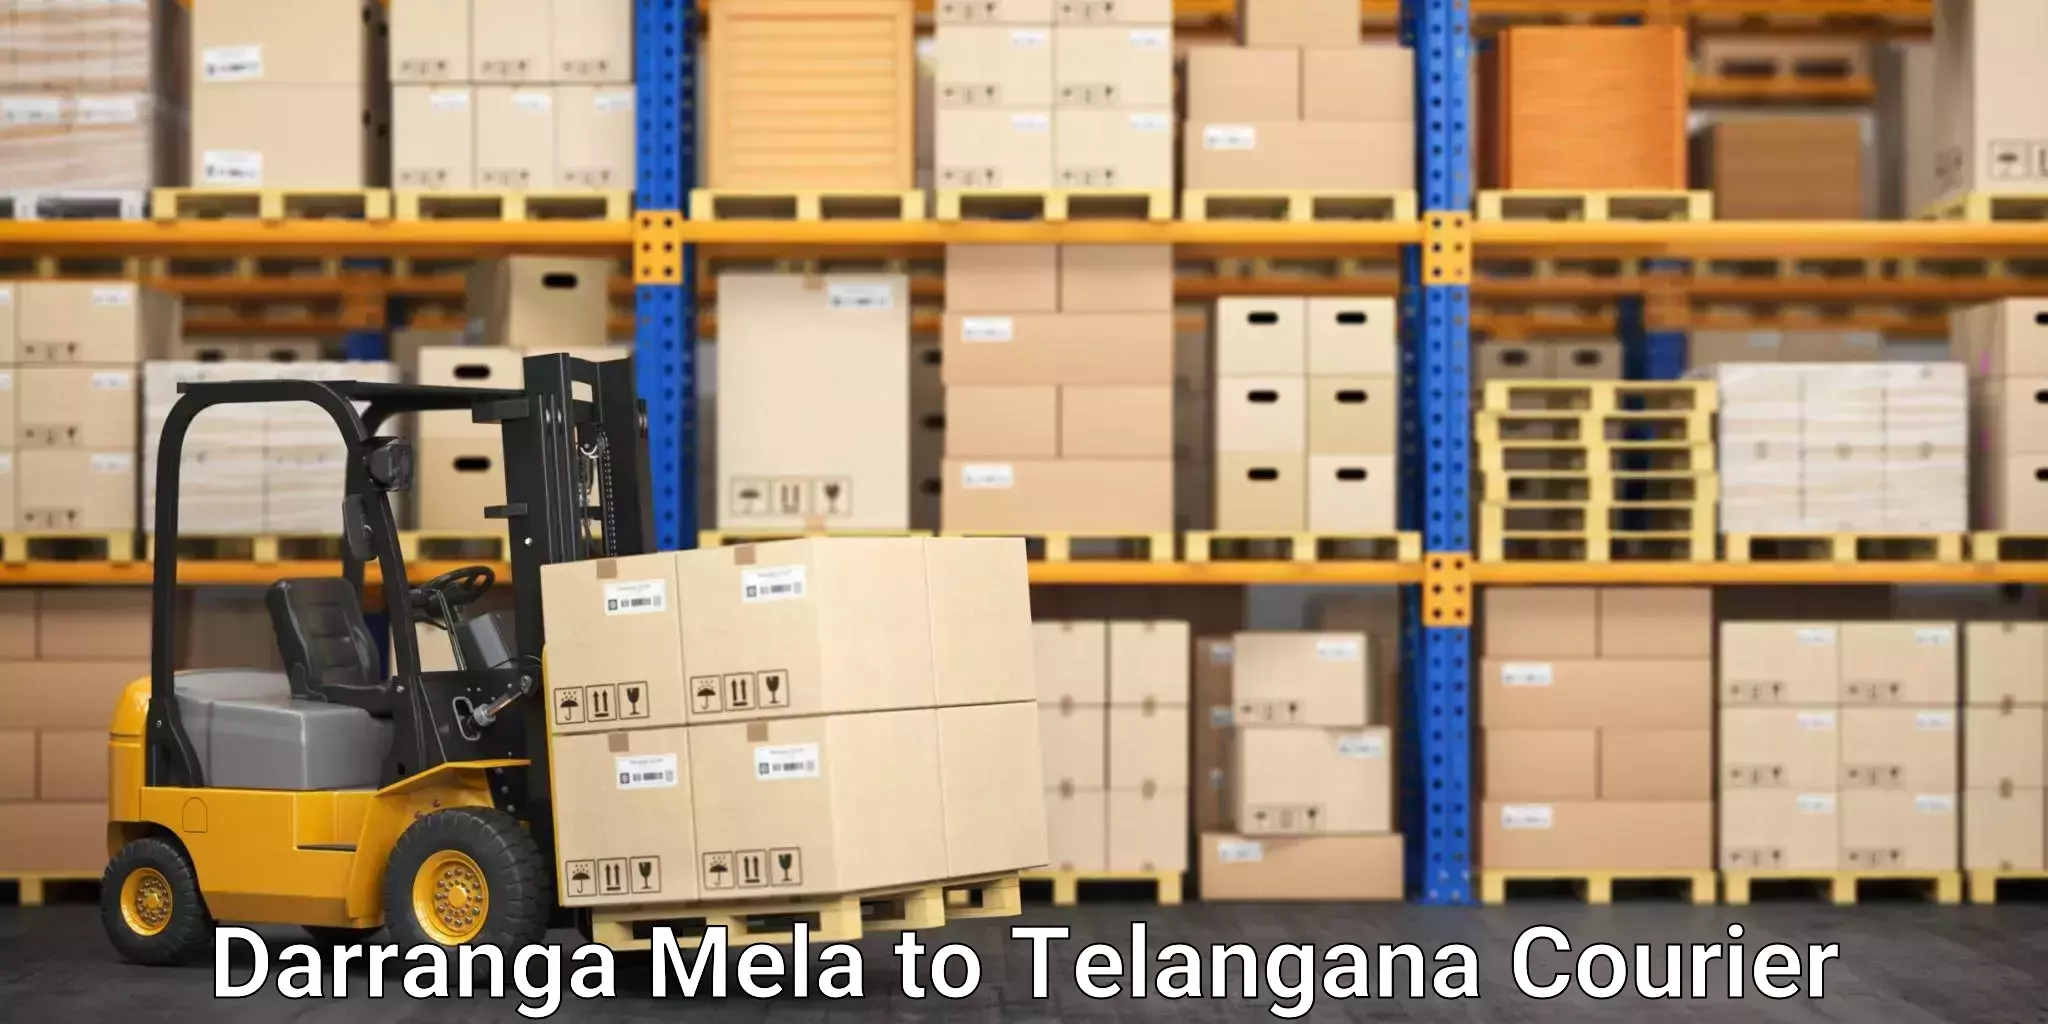 User-friendly courier app Darranga Mela to Medak